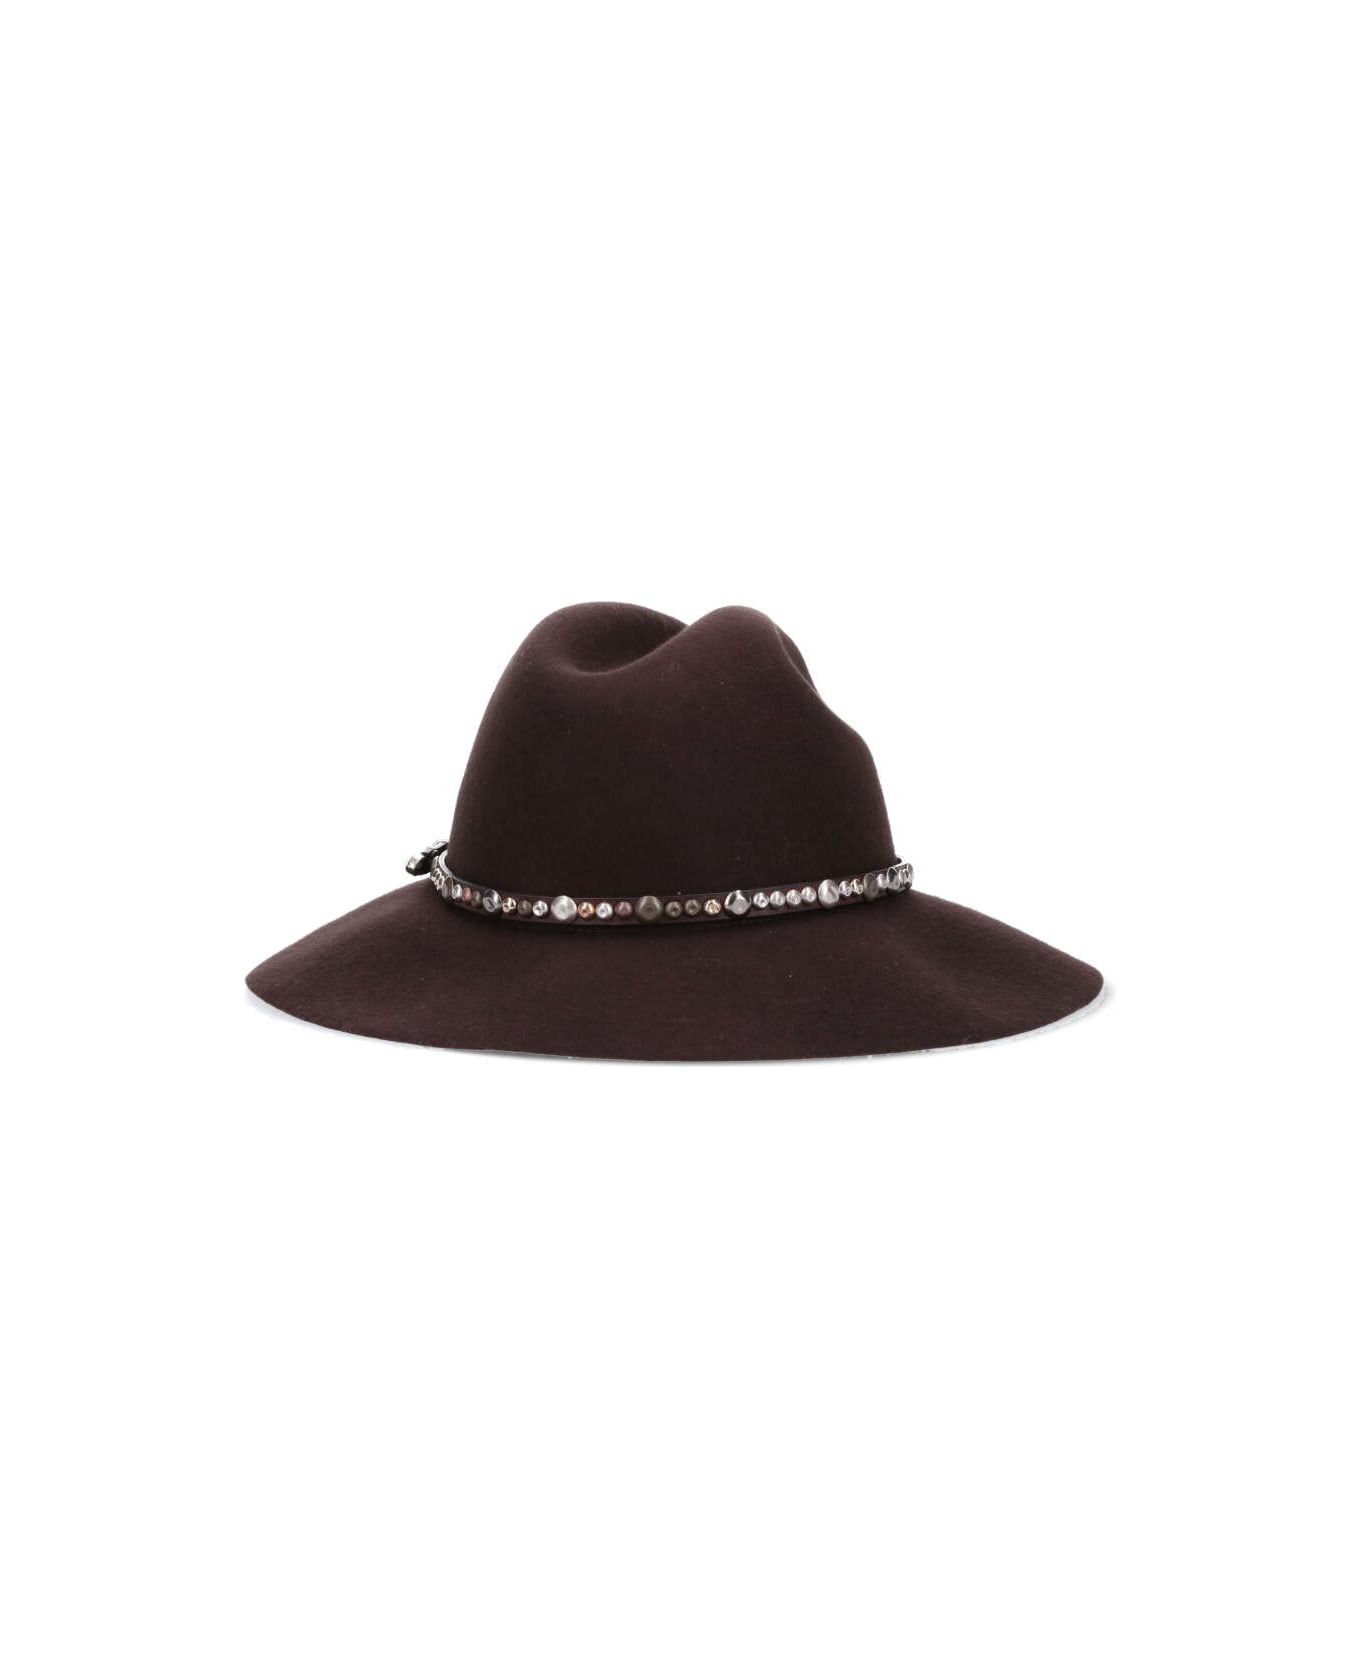 Golden Goose Golden Fedora Hat Felt With Studded Leather Belt - Brown